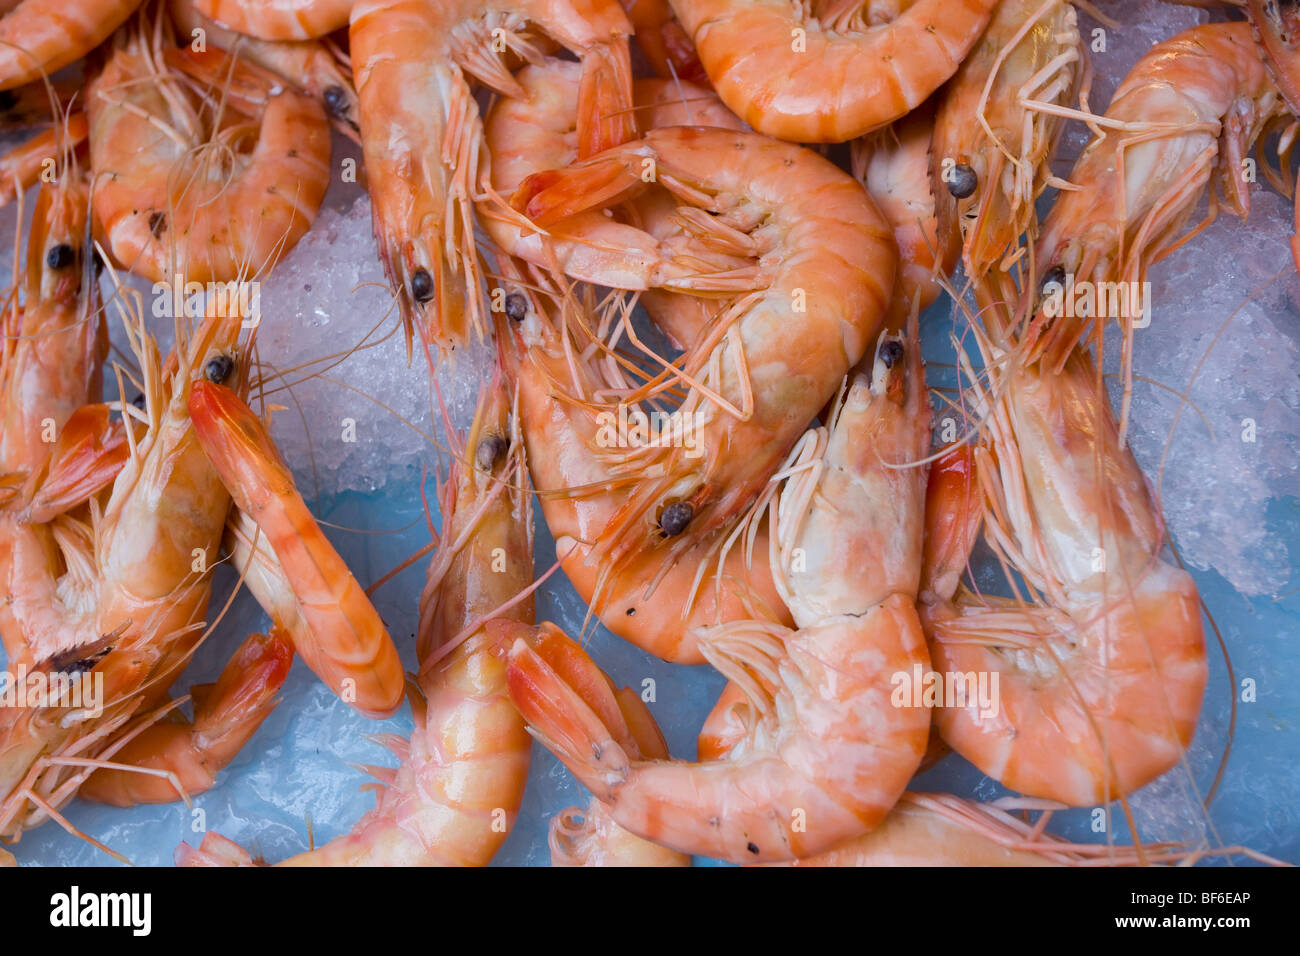 Shrimps, Fish Market, Place Saint-Francois, Nice, Cote D Azur, Provence, France Stock Photo